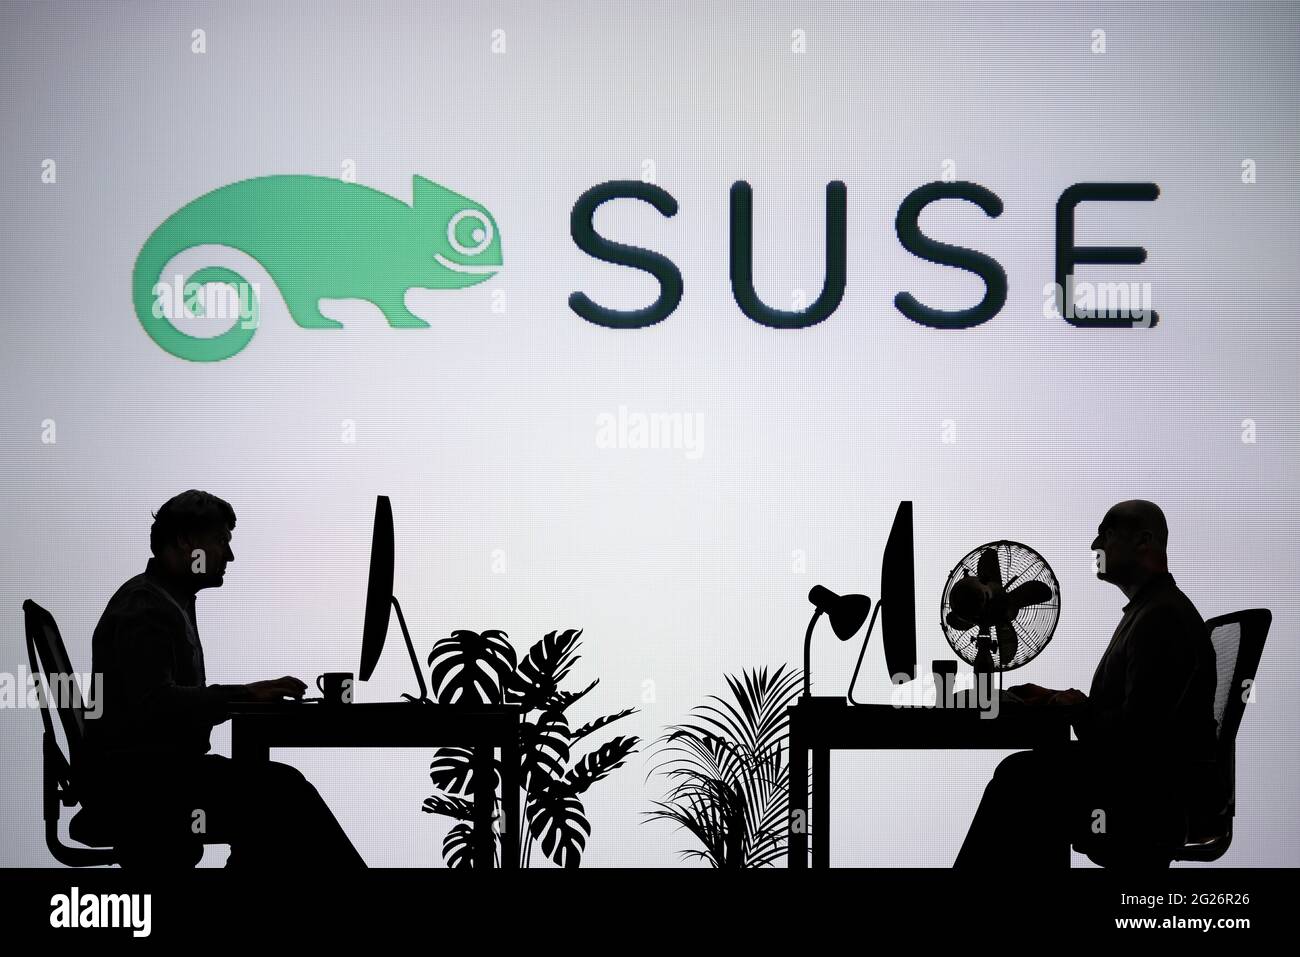 Das SUSE Logo wird auf einem LED-Bildschirm im Hintergrund angezeigt, während zwei silhouettierte Personen in einer Büroumgebung arbeiten (nur für redaktionelle Zwecke). Stockfoto